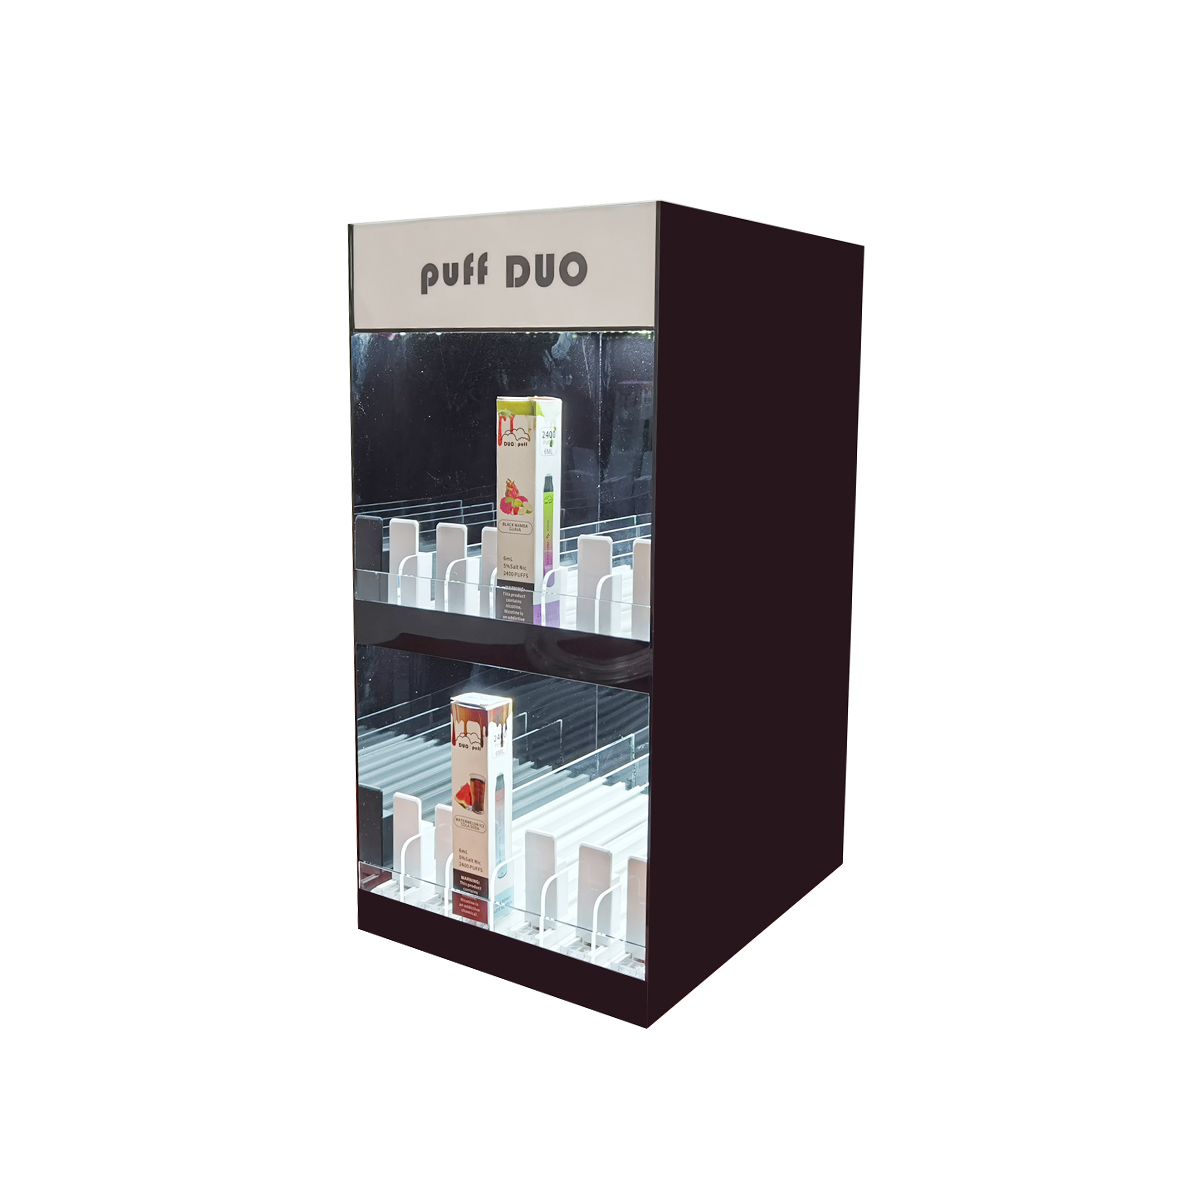 2-tier e-cigarette and e-liquid display stand